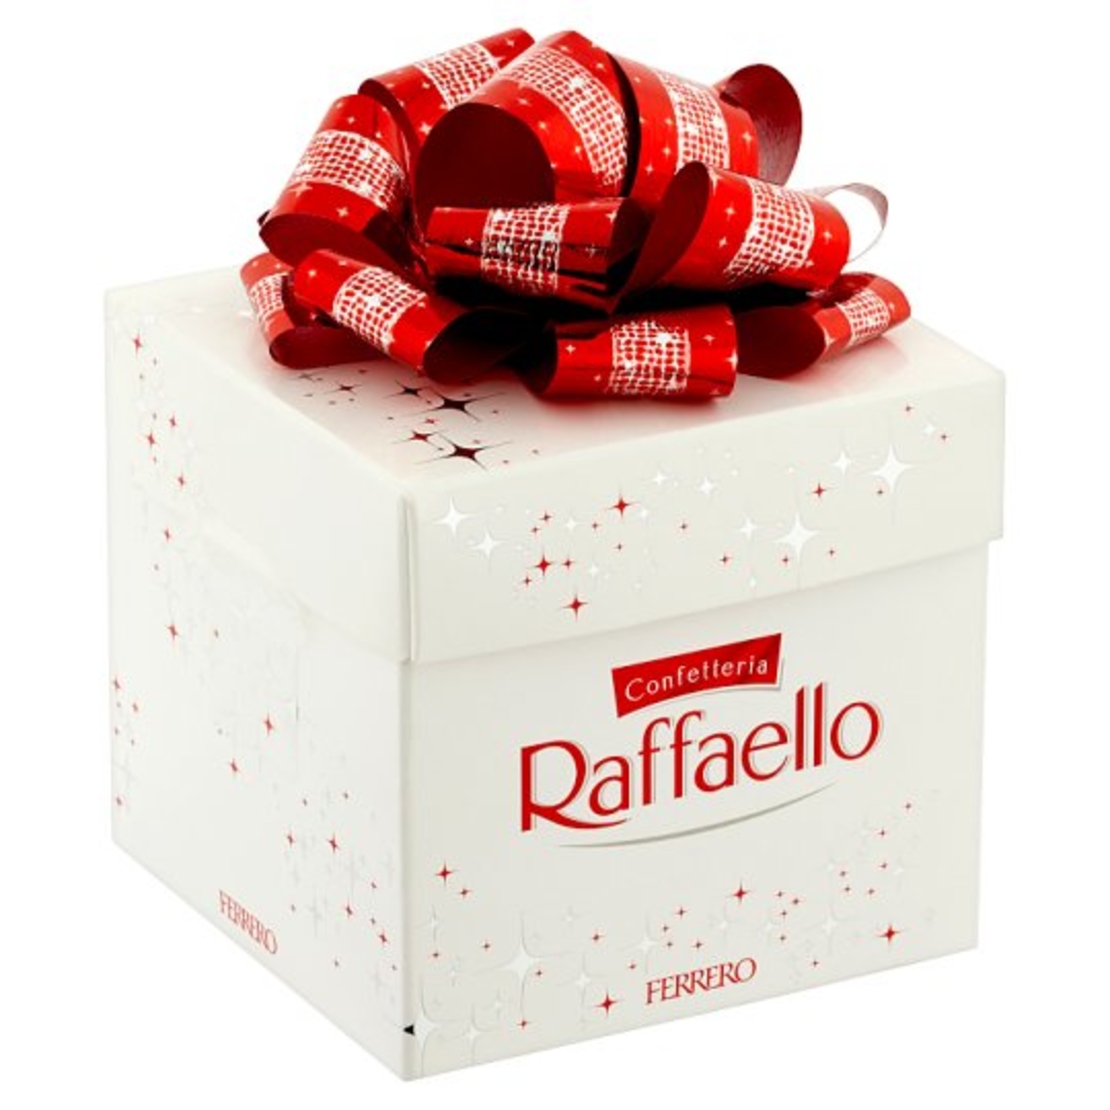 7 Raffaello Chocolates in a Box